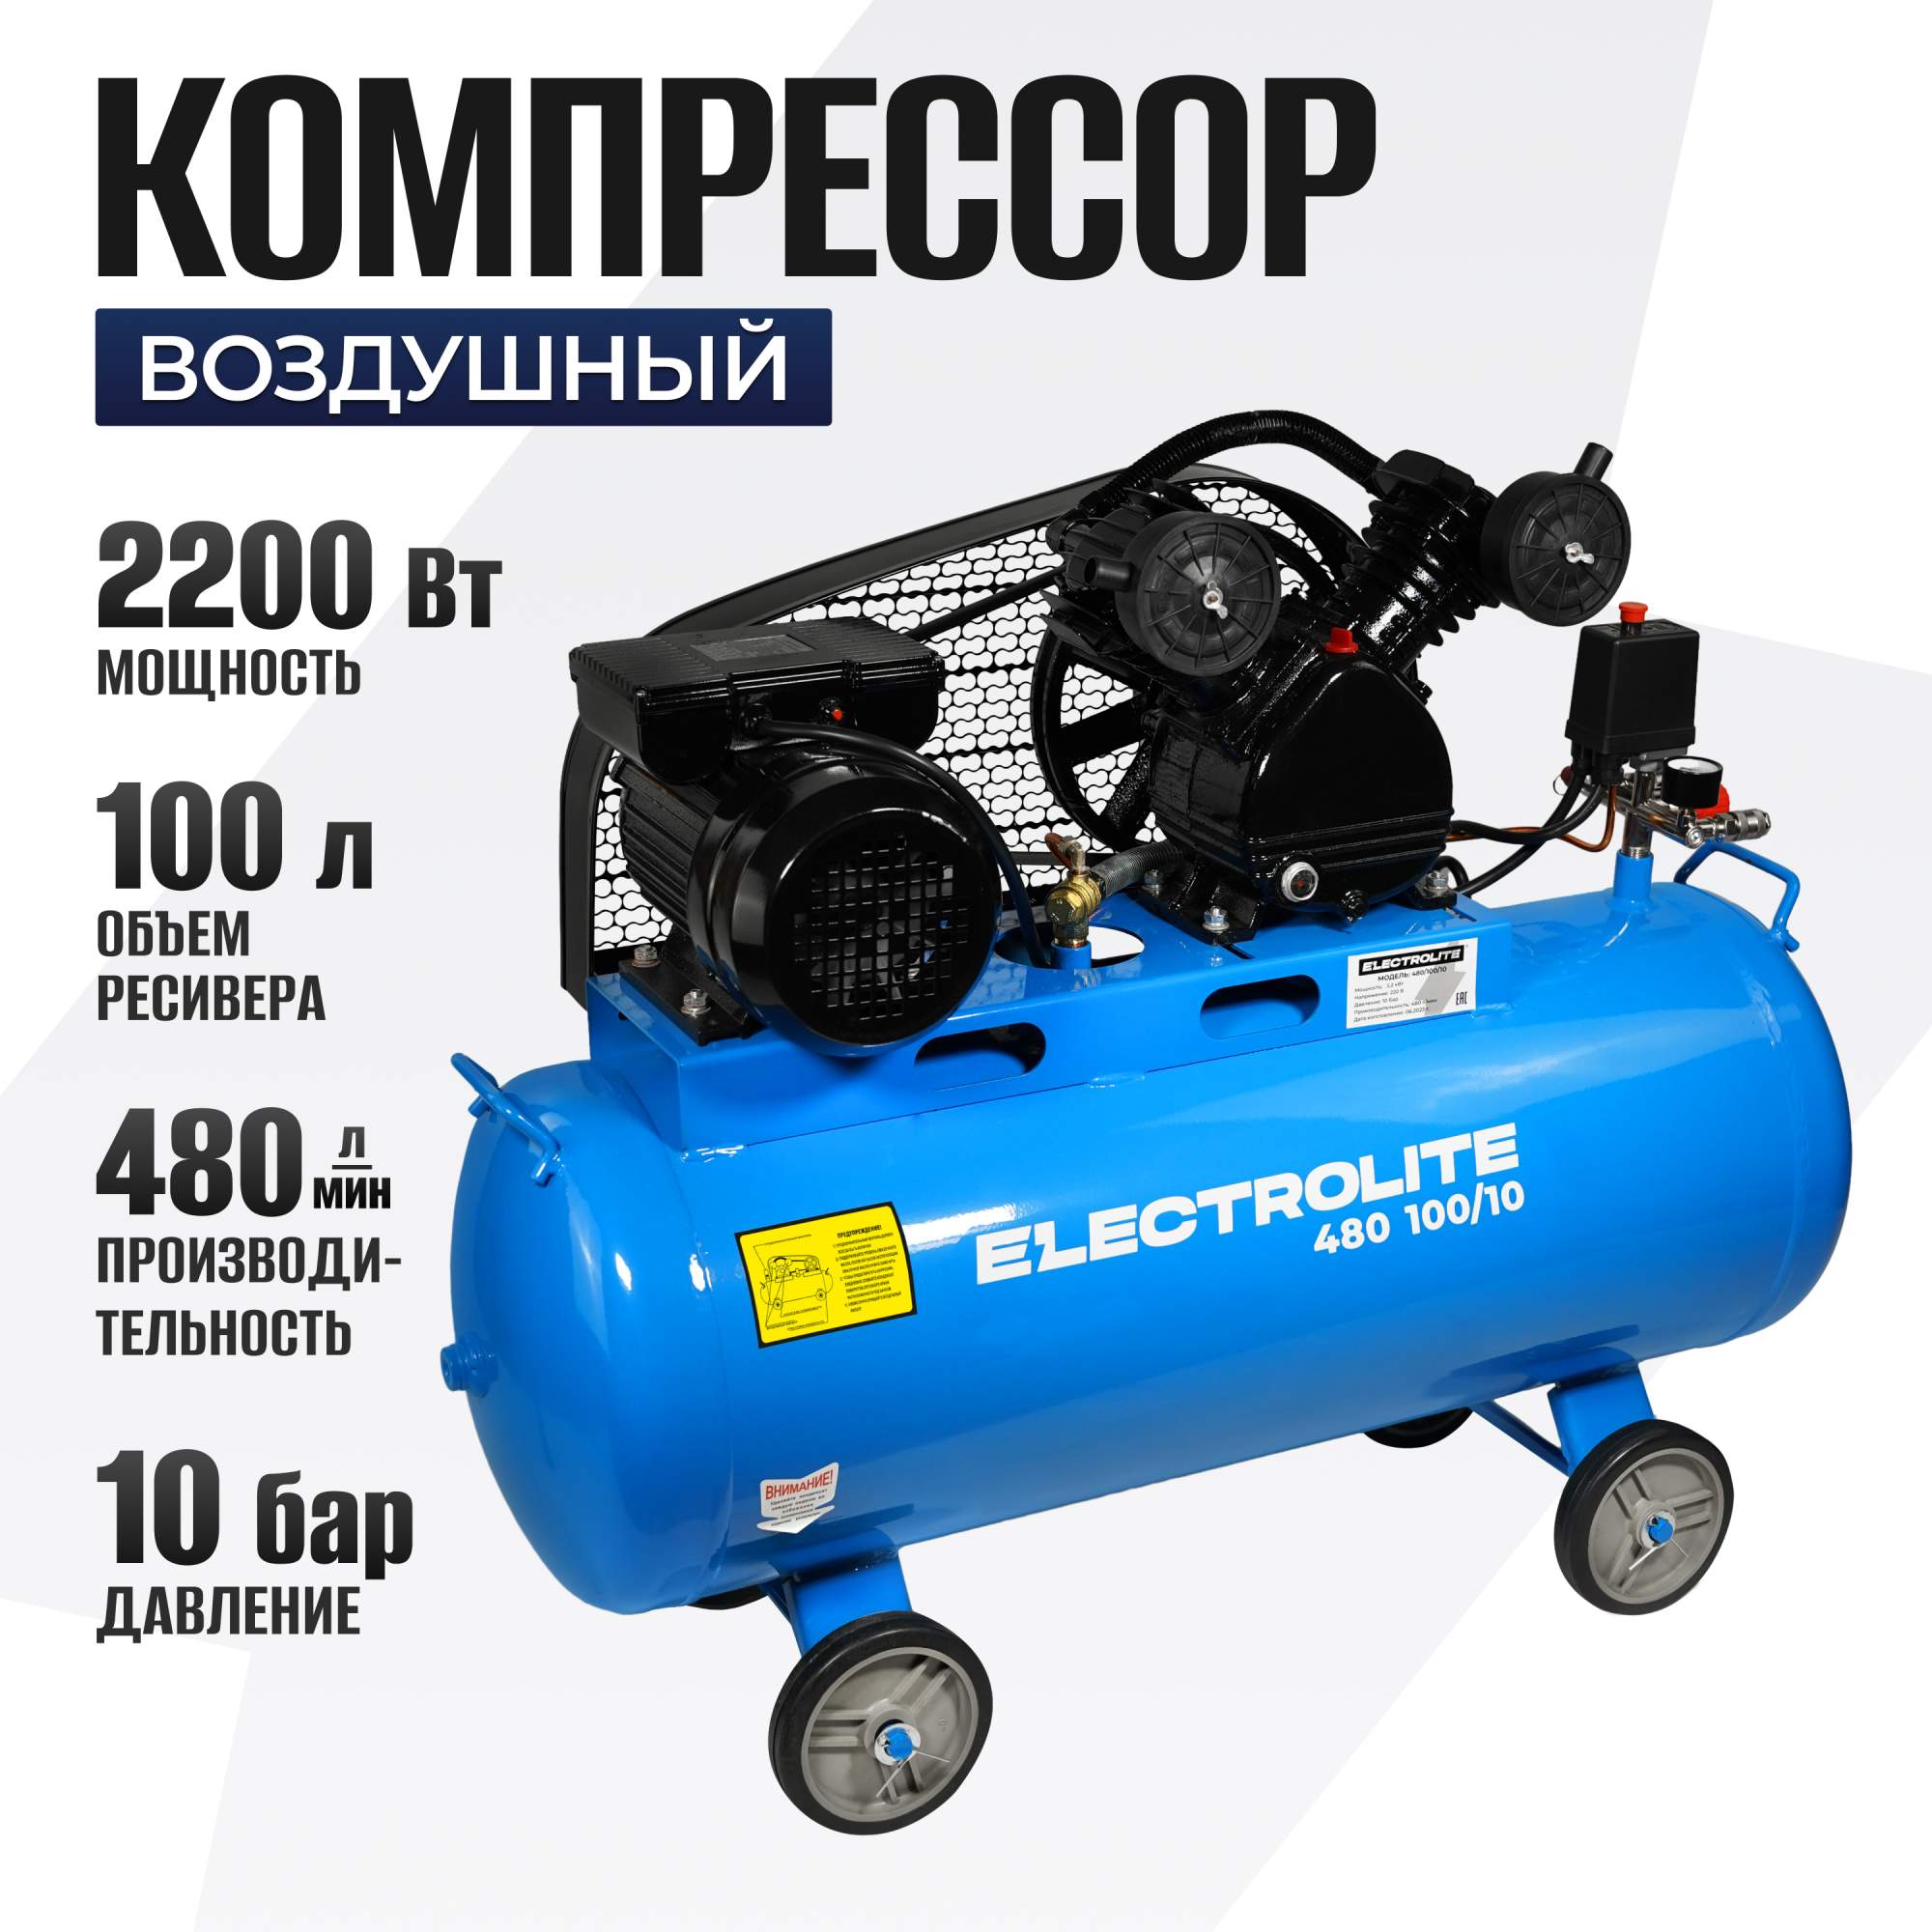 Ременный компрессор воздушный Electrolite 480/100/10 2,2кВт 10атм 220В 100л 480л/мин – купить в Москве, цены в интернет-магазинах на Мегамаркет